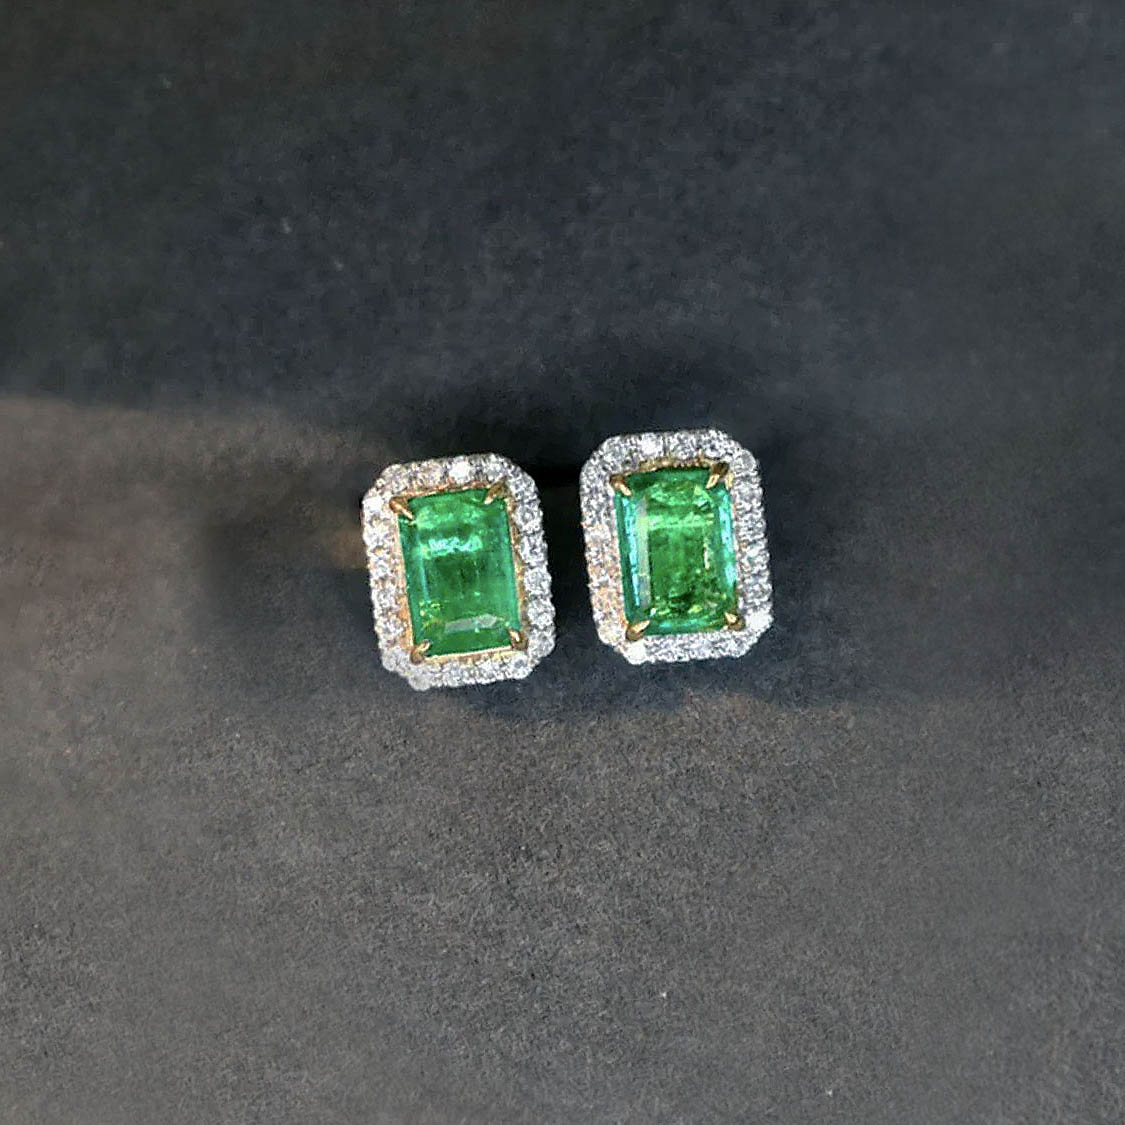 emerald earrings diamond halo in 18k white gold